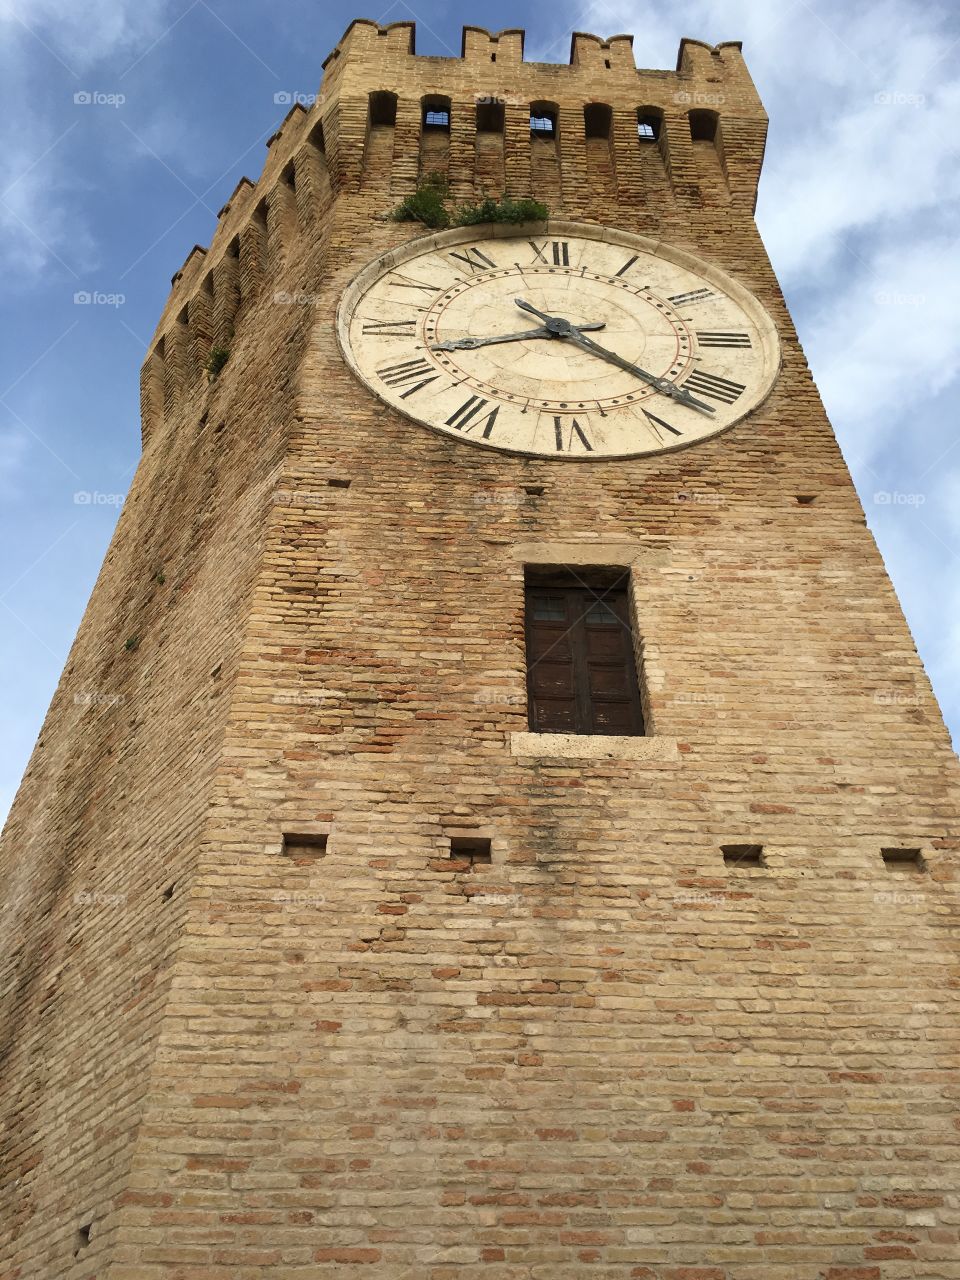 Gualtieri's tower, San Benedetto del Tronto, Marche region, Italy